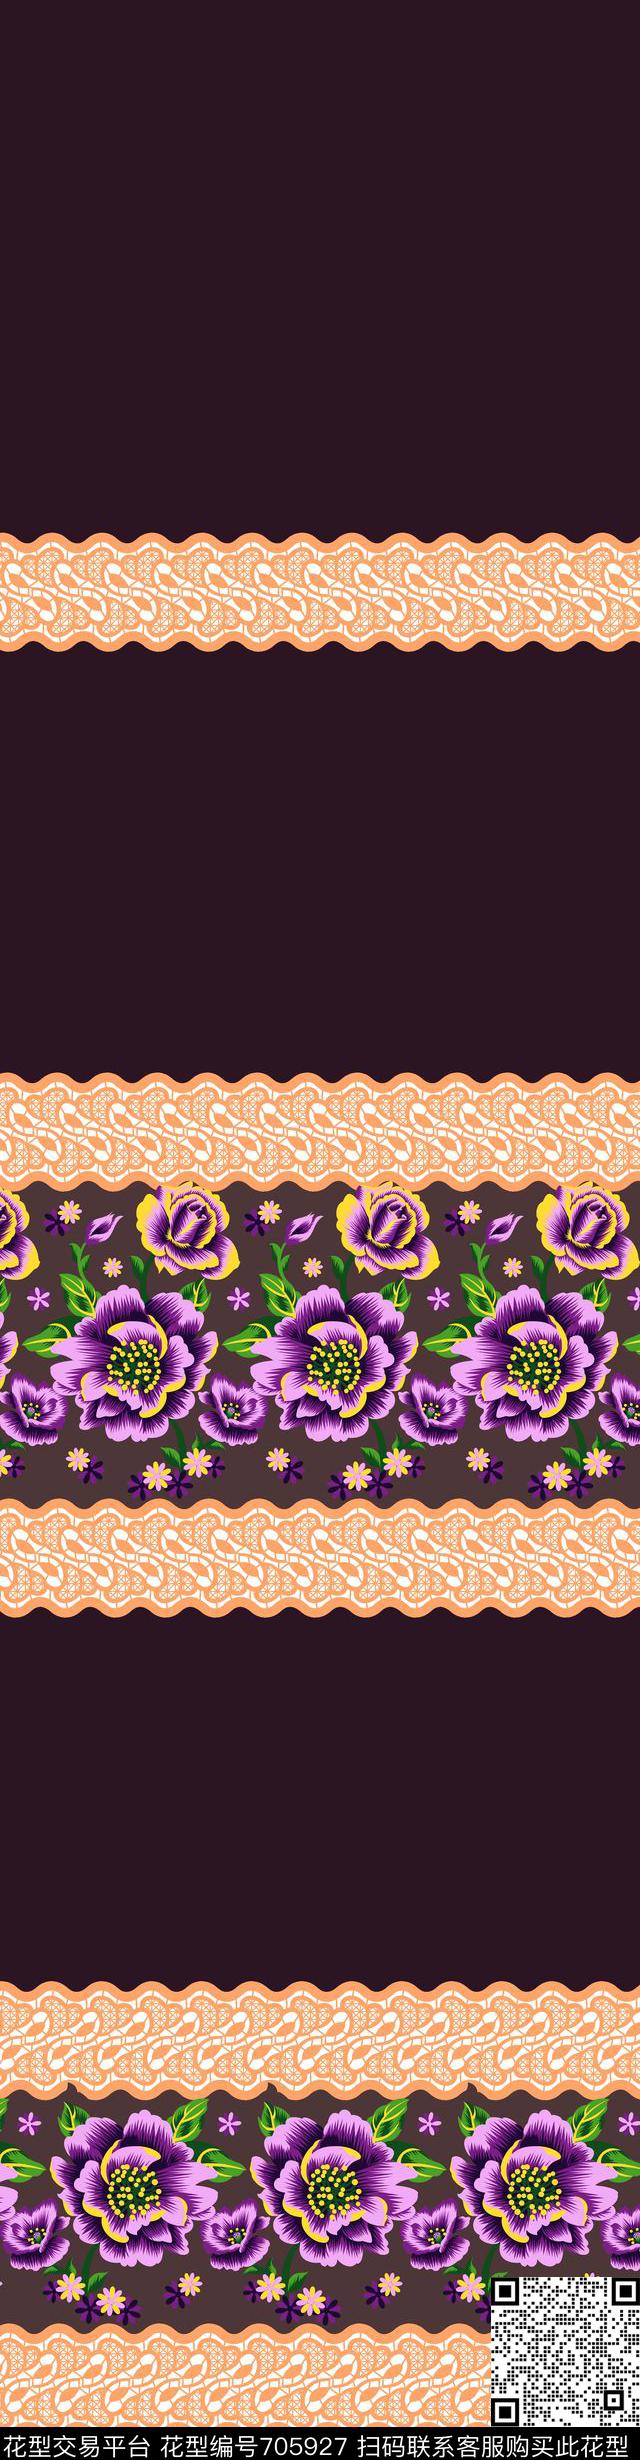 032.jpg - 705927 - 玉兰花 玫瑰 牡丹 - 传统印花花型 － 窗帘花型设计 － 瓦栏